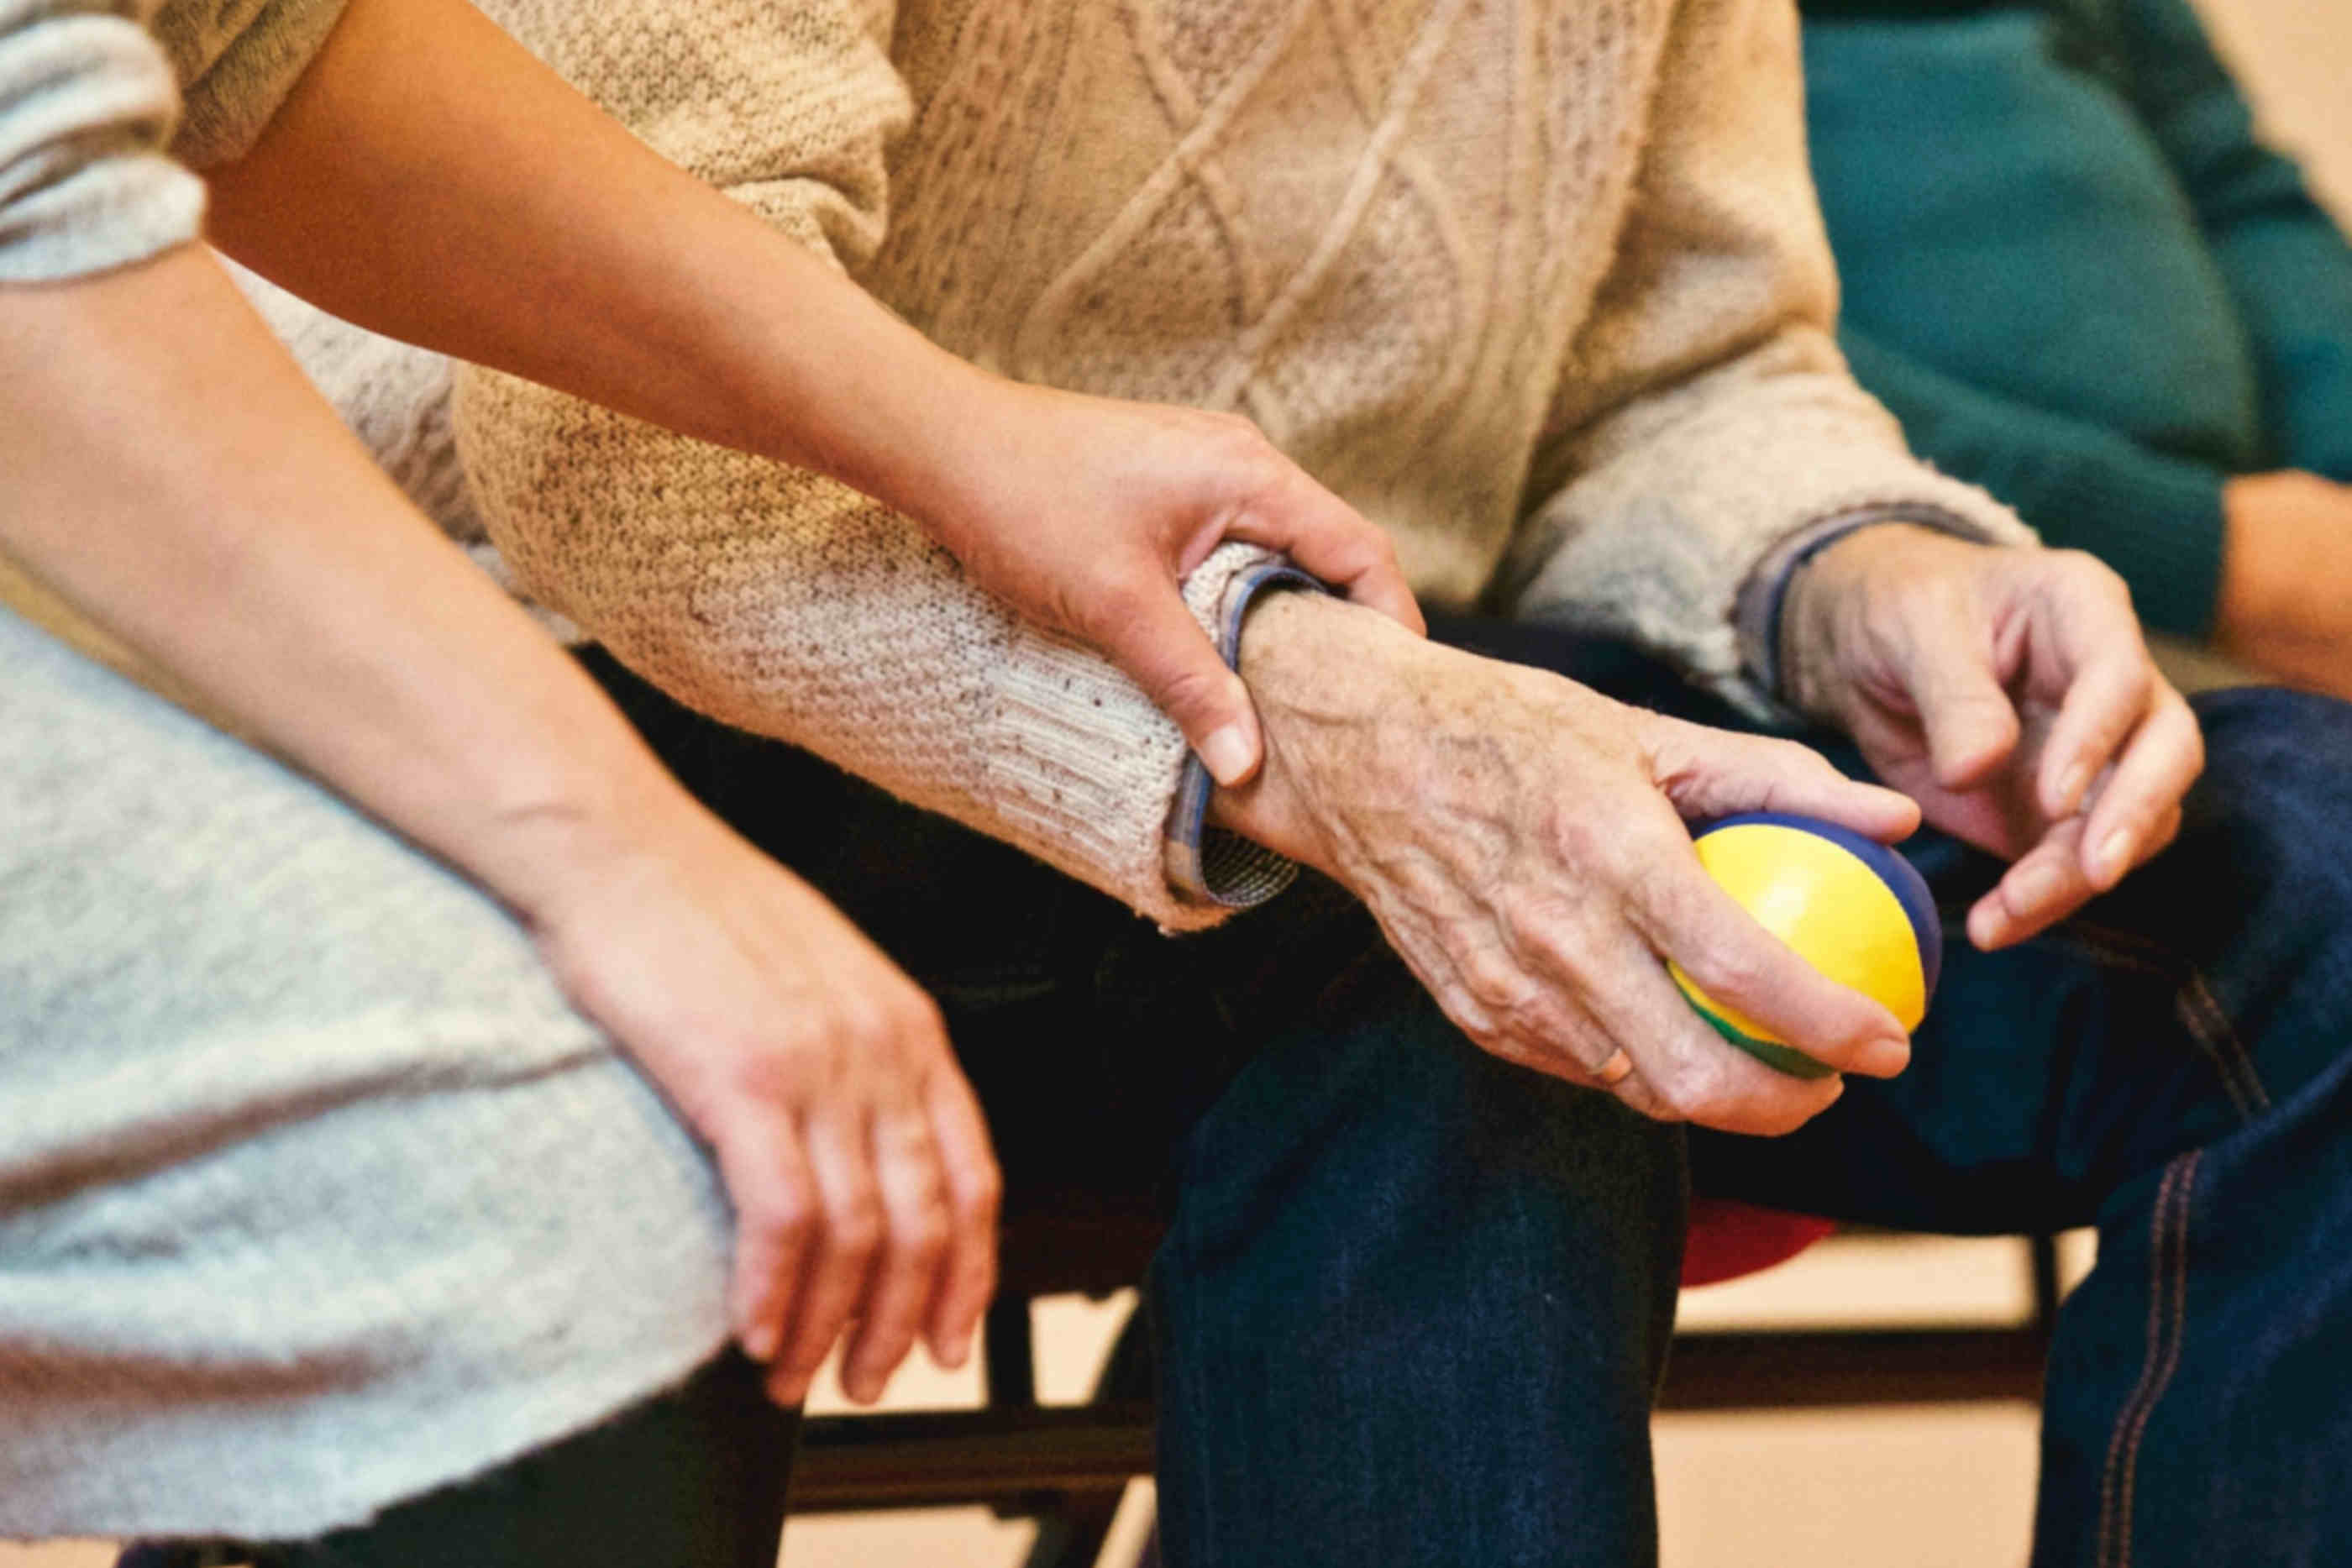 Senhora e idoso sentados lado a lado. Senhora mede a pulsação do idoso enquanto este último agarra uma bola anti-stress para as mãos.